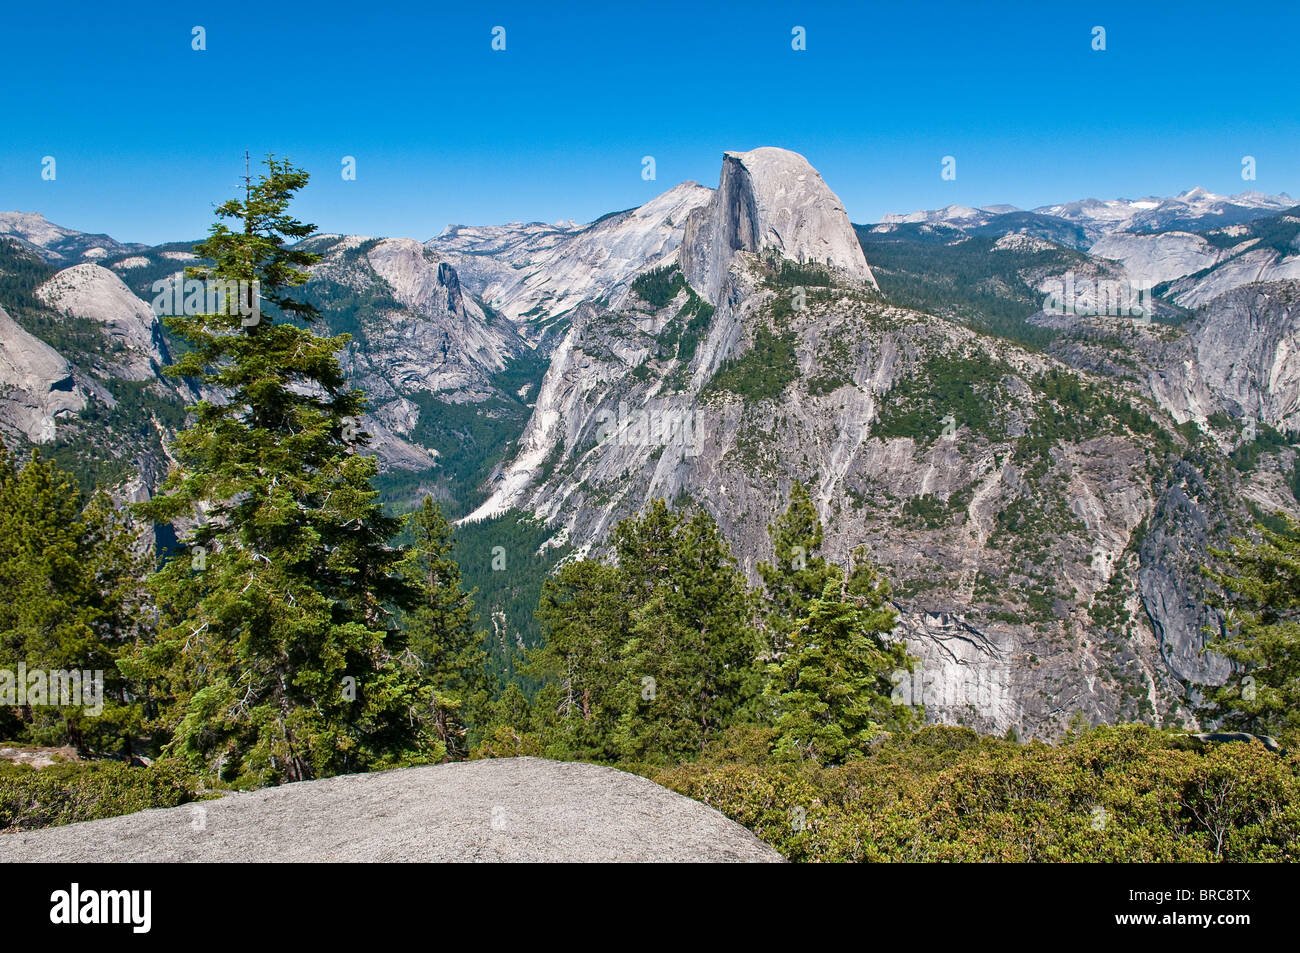 Demi Dôme Mountain vu de Glacier Point, Yosemite National Park, California, USA Banque D'Images